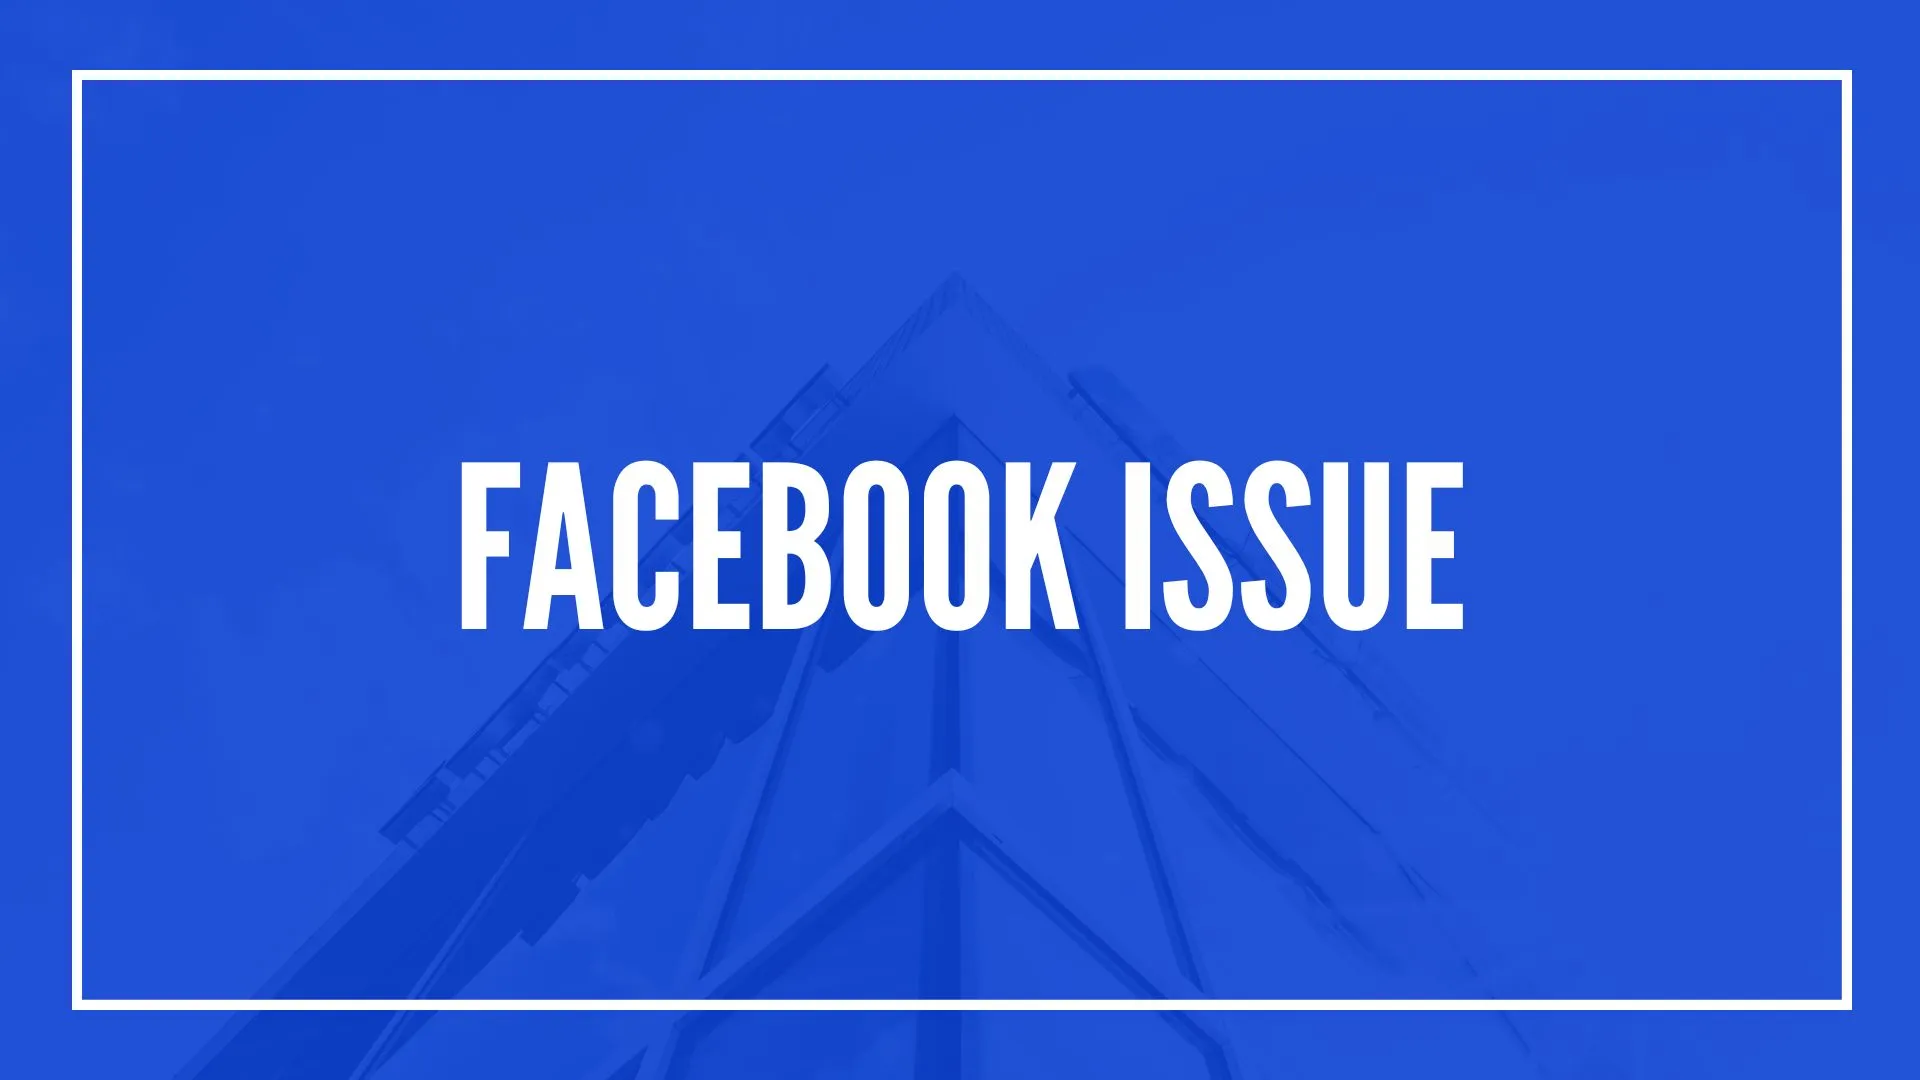 Facebook issue